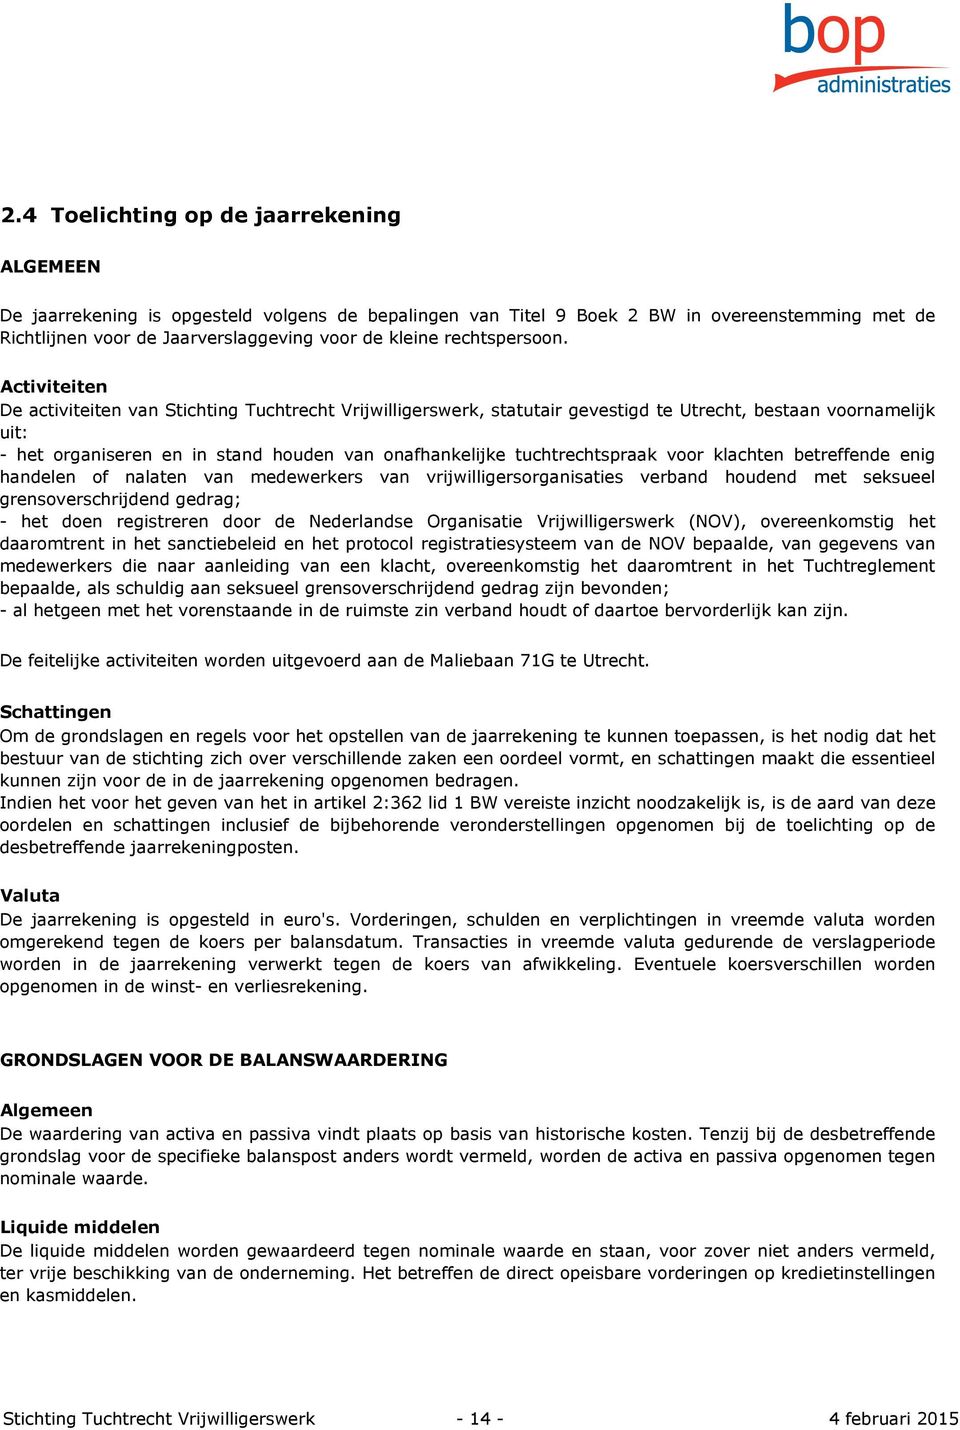 Activiteiten De activiteiten van Stichting Tuchtrecht Vrijwilligerswerk, statutair gevestigd te Utrecht, bestaan voornamelijk uit: - het organiseren en in stand houden van onafhankelijke